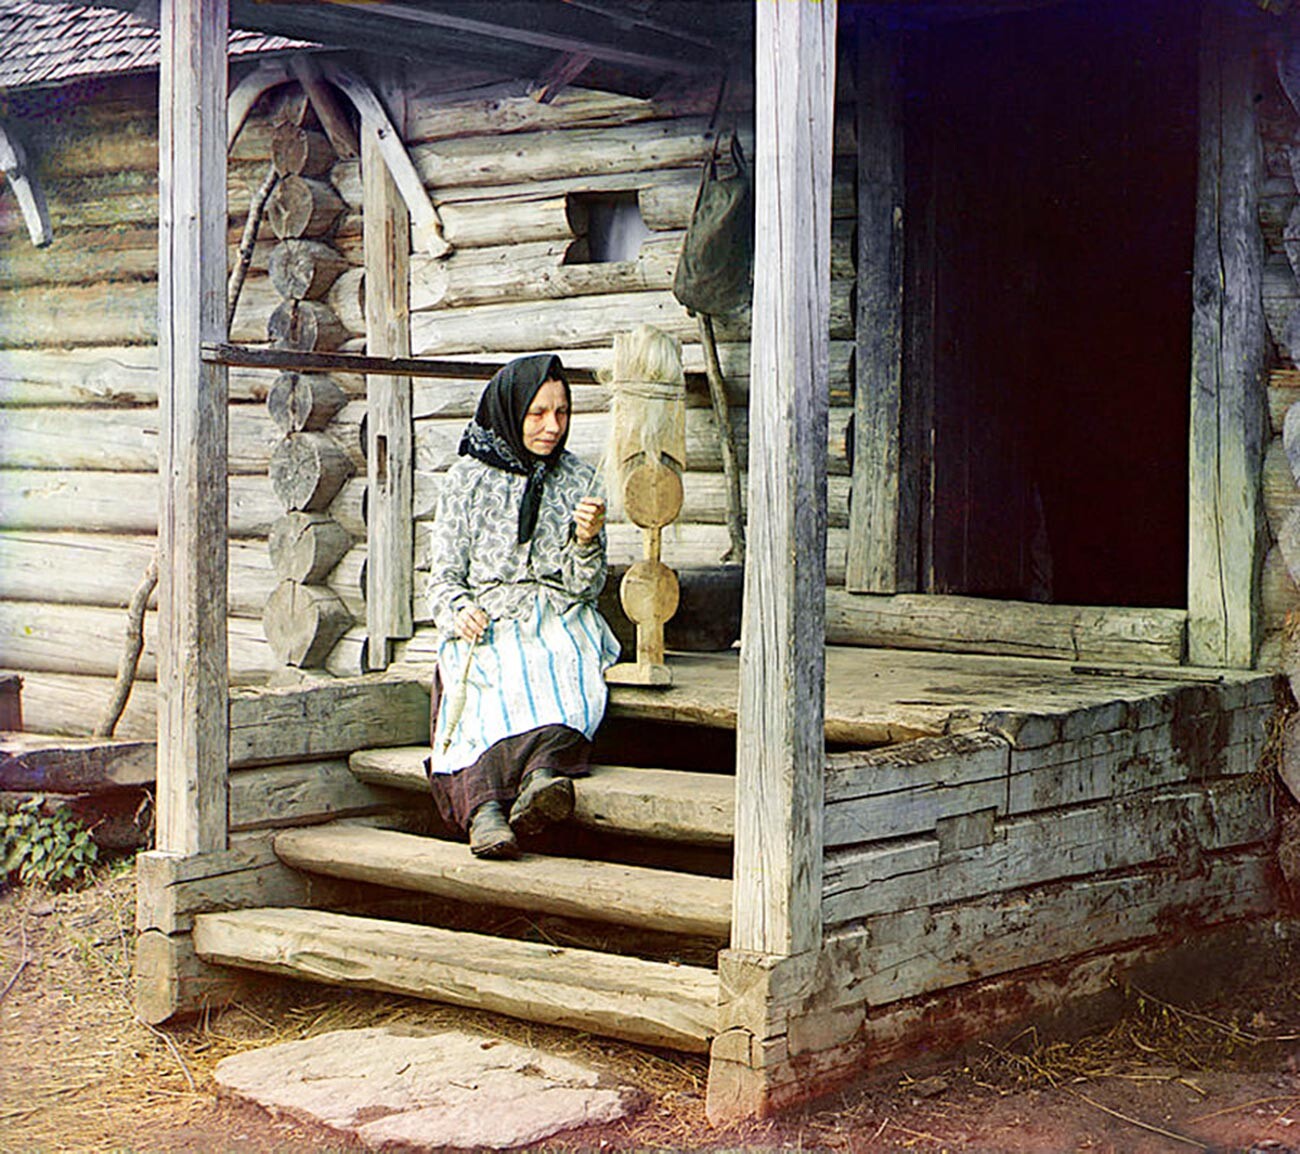 Une femme filant, 1910. Avant le rouet automatique, l’on avait recours à des rouets à main comme celui-ci.

